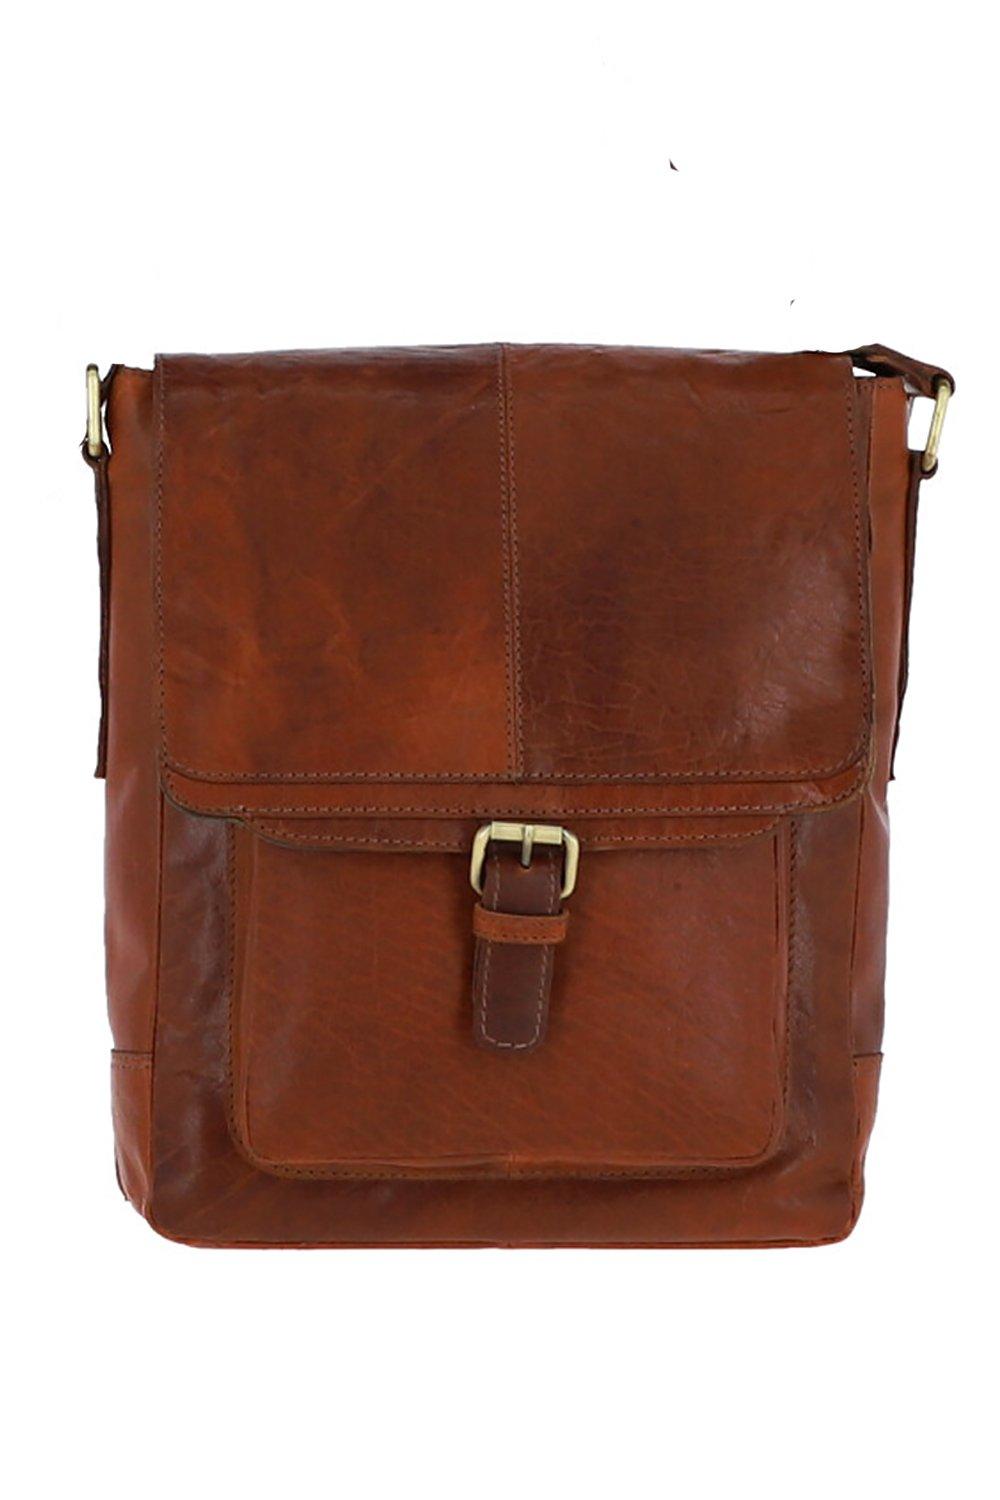 Дорожная сумка из винтажной кожи среднего размера Ashwood Leather, коричневый сумка поясная повседневная натуральная кожа внутренний карман регулируемый ремень коричневый